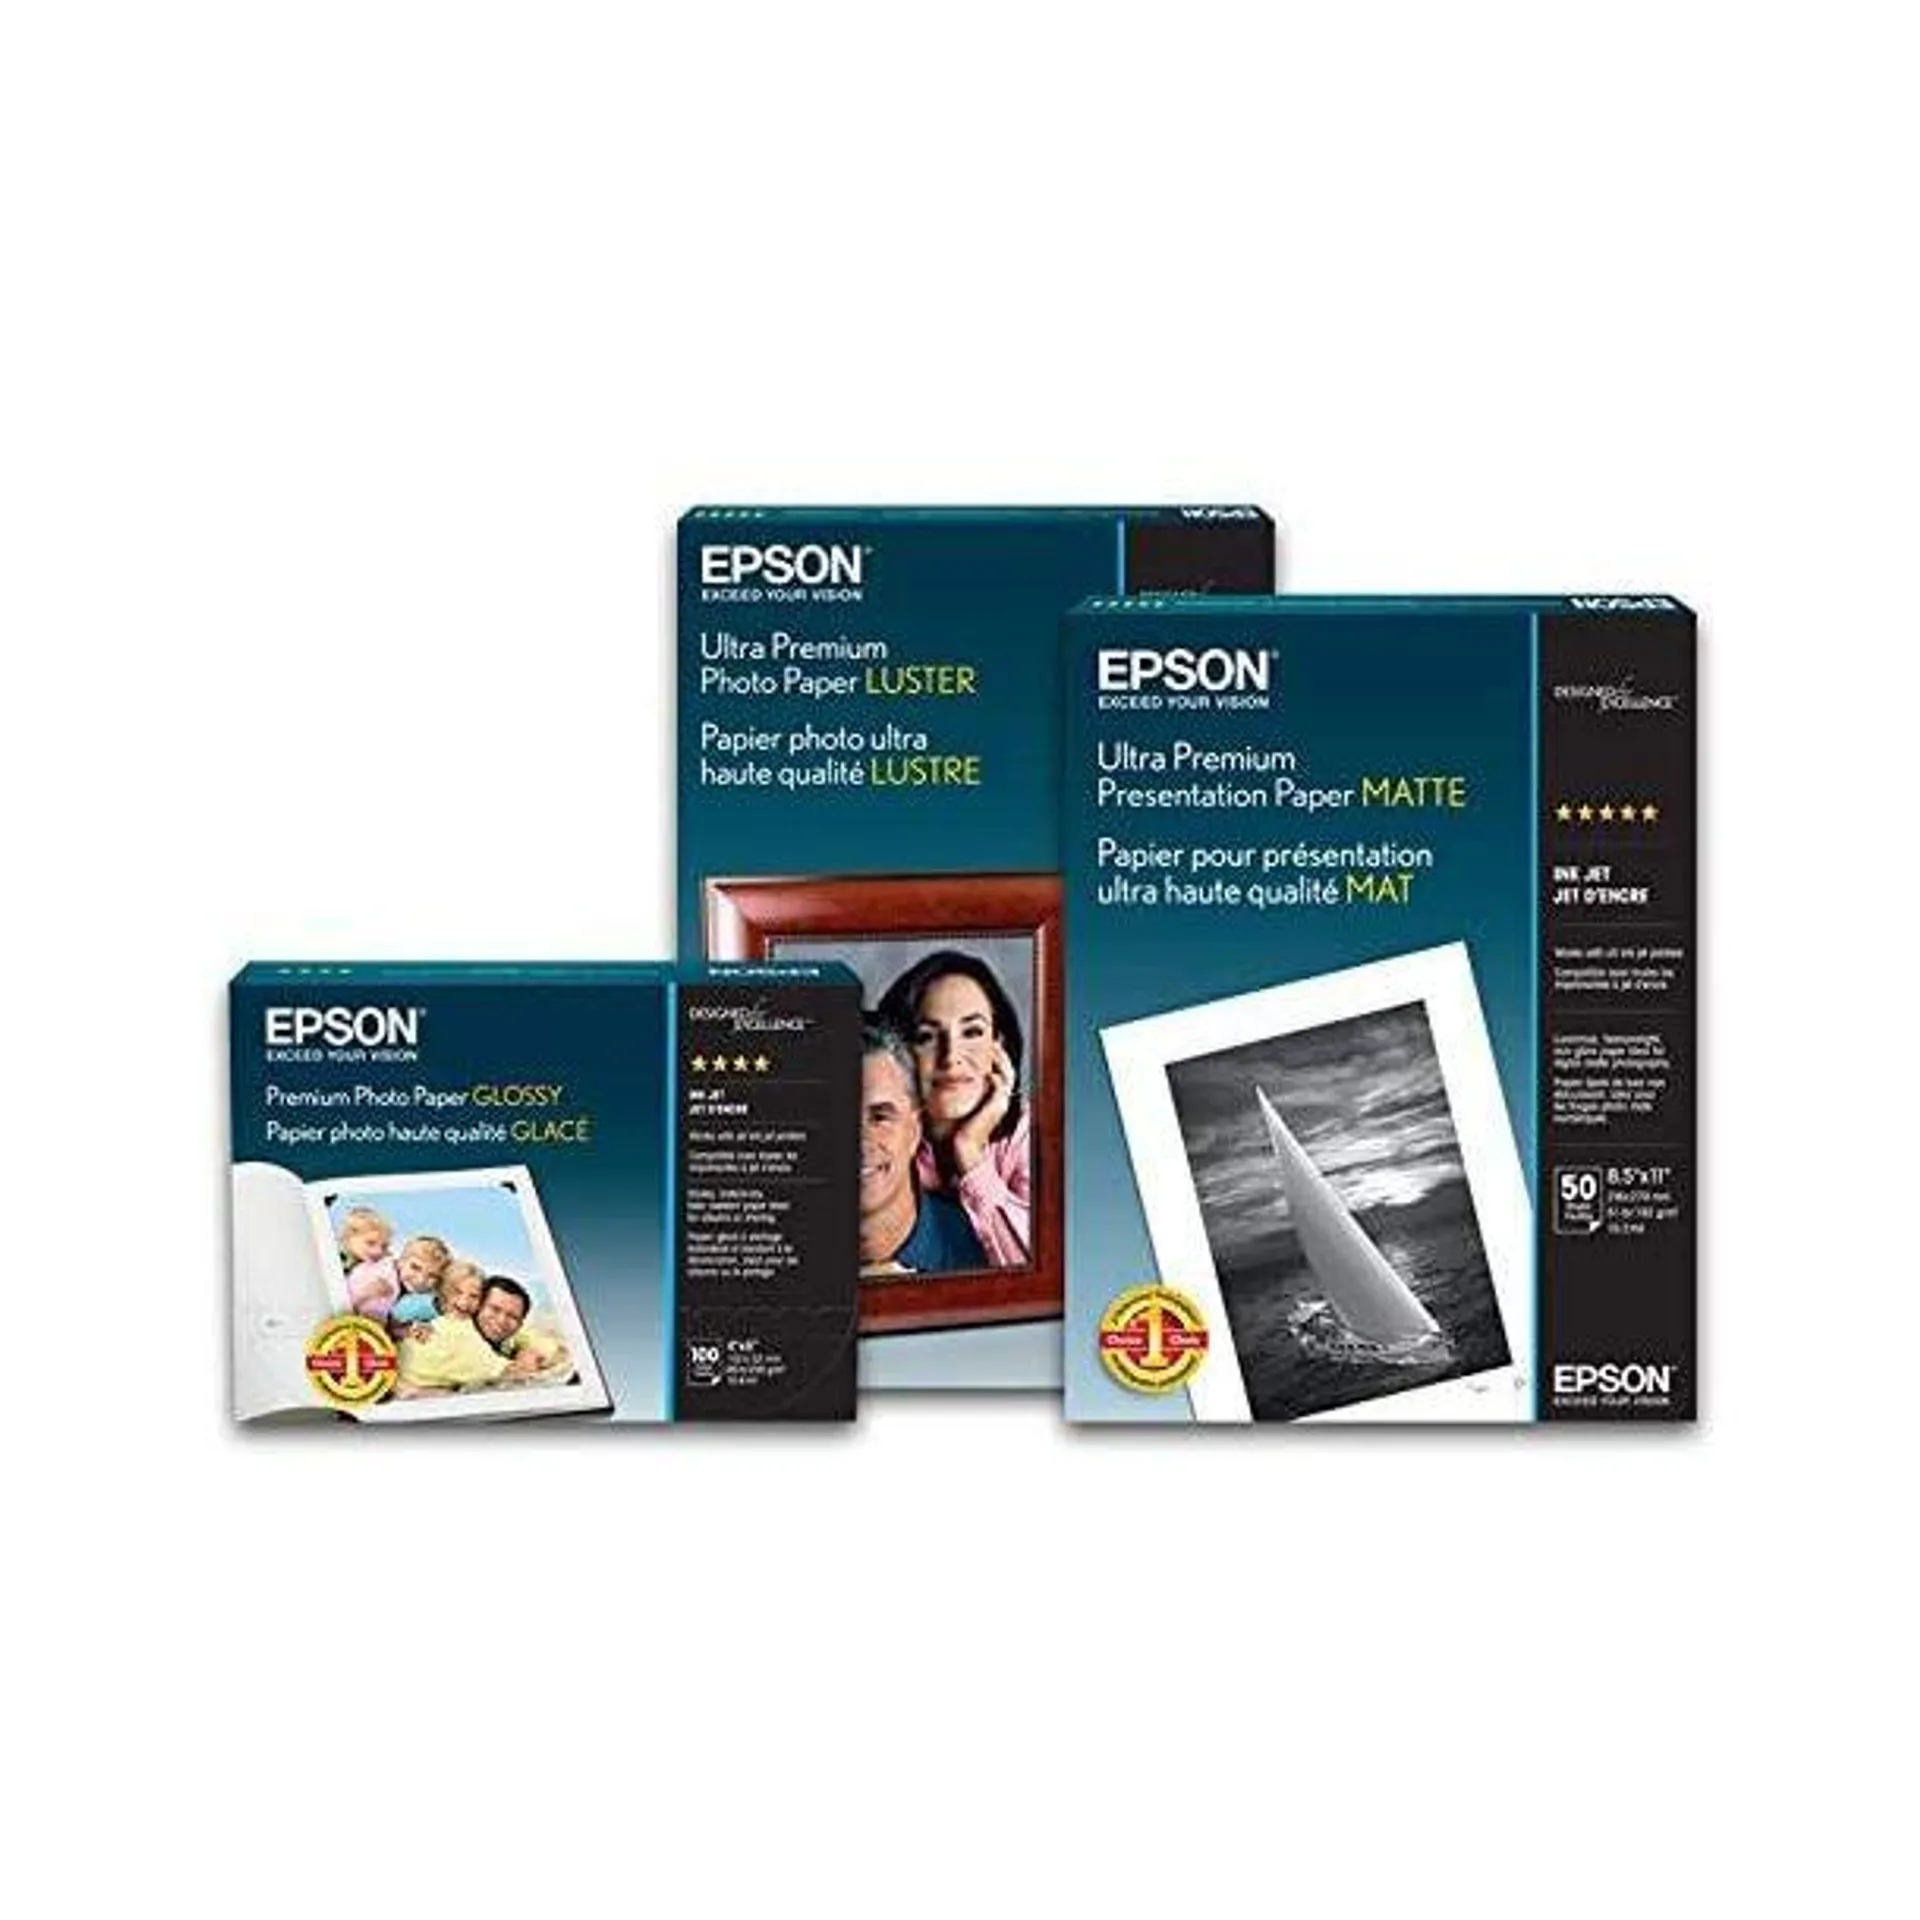 Epson Ultra Premium 8.5" x 11" Photo Paper (50-Sheets) - White